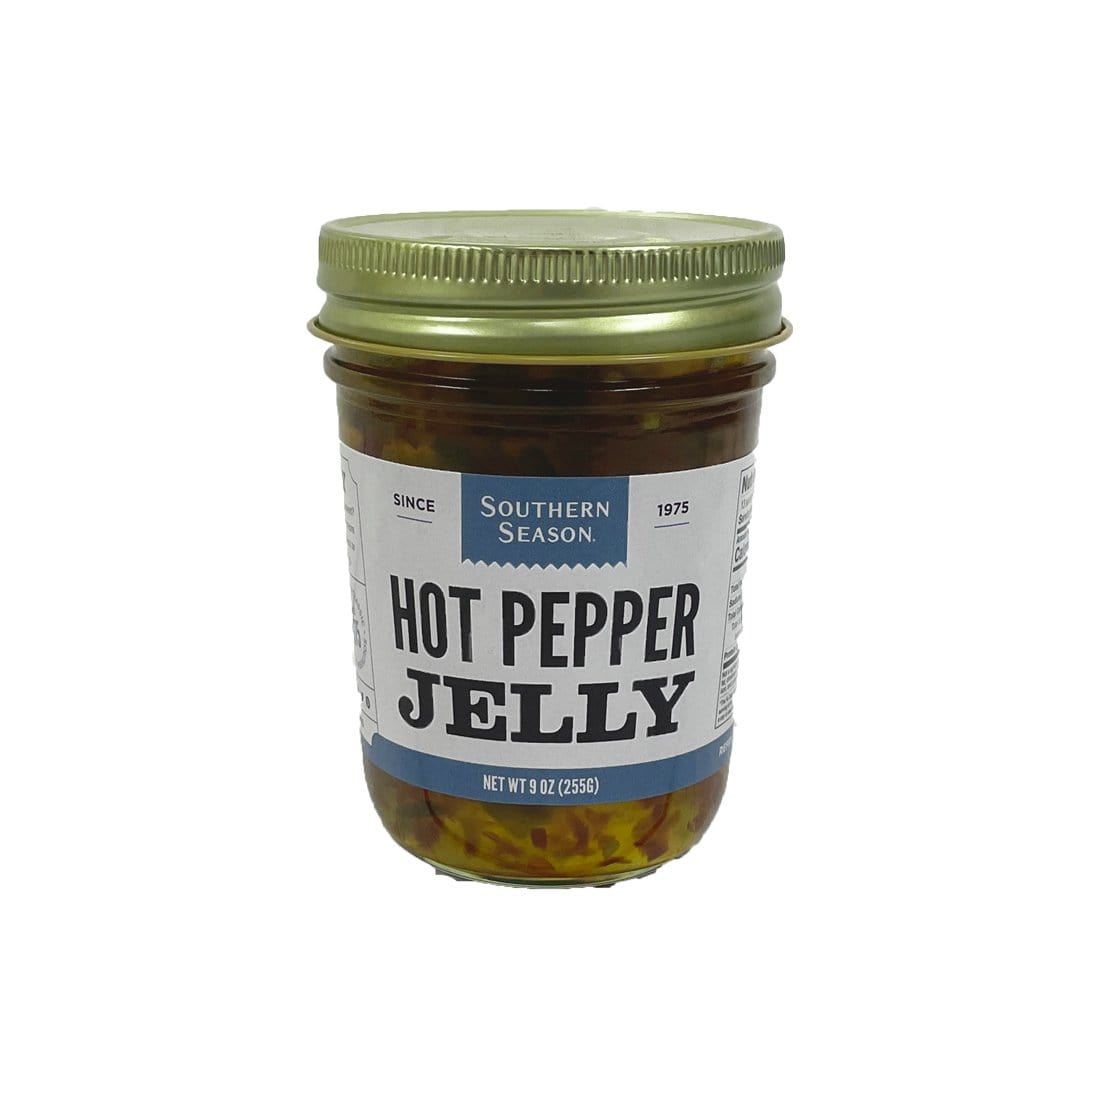 Southern Season Southern Season Hot Pepper Jelly 9 oz